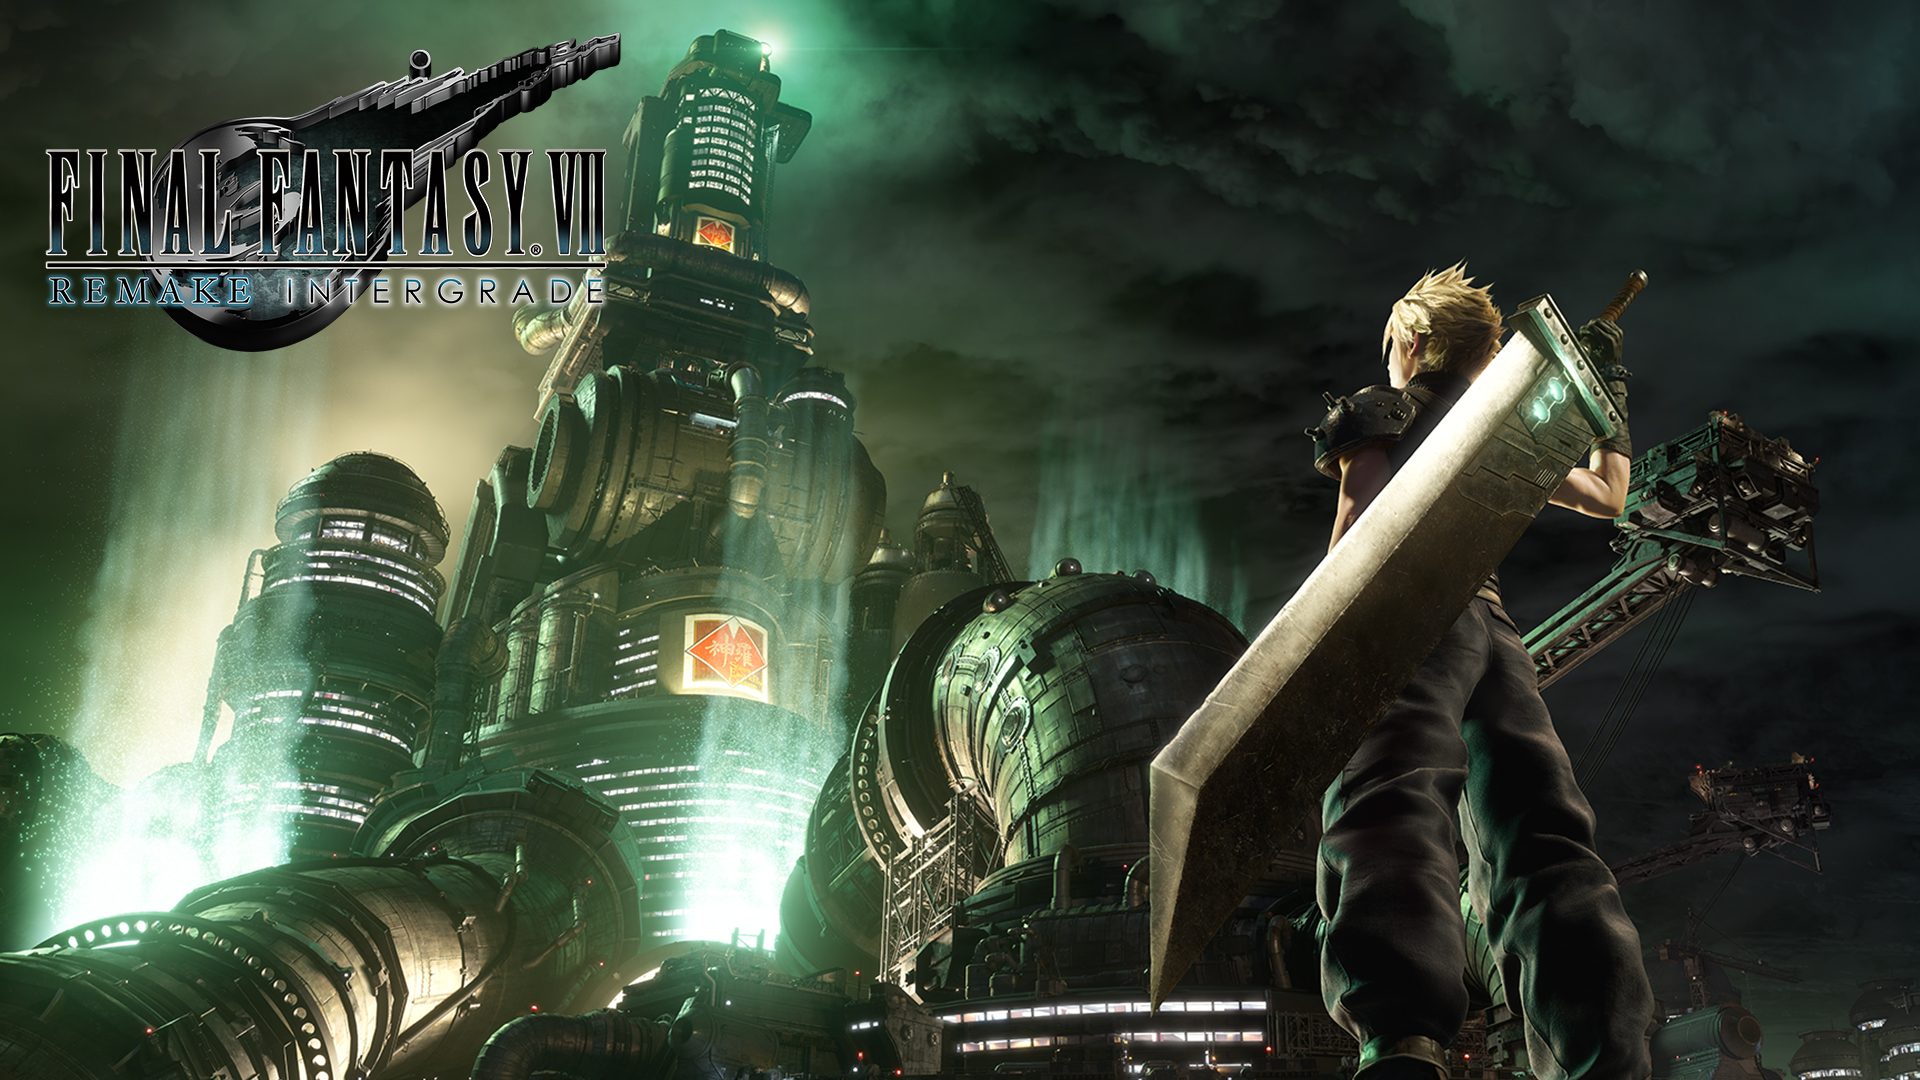 Final Fantasy VII Remake Intergrade arrives on PS5 June 2021